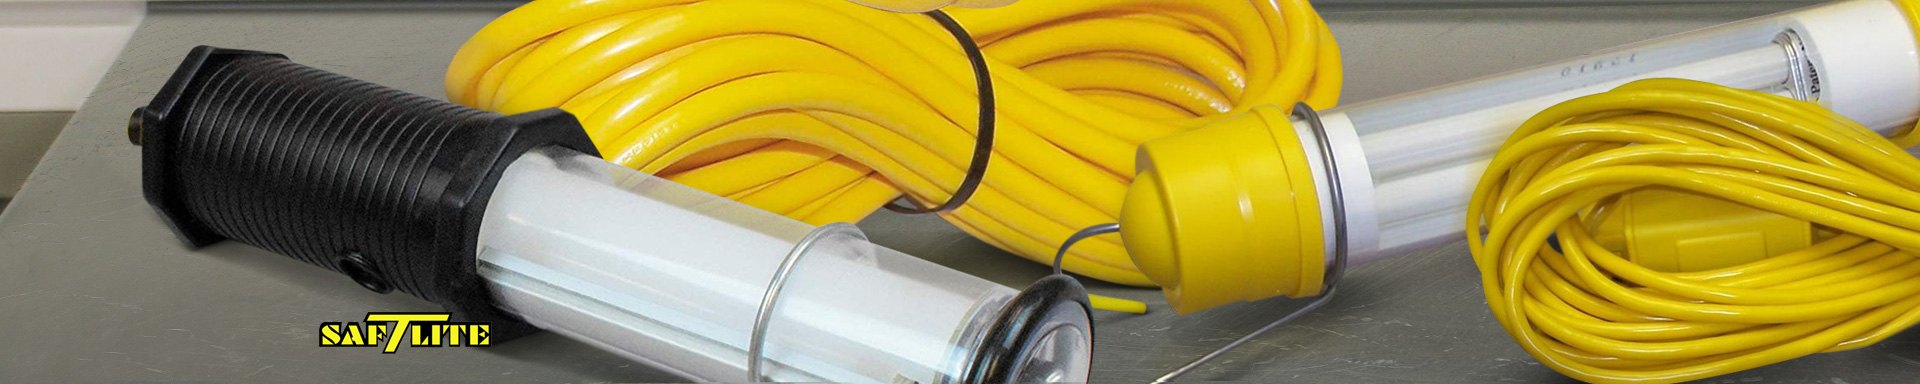 Saf-T-Lite Extension Cords & Cables